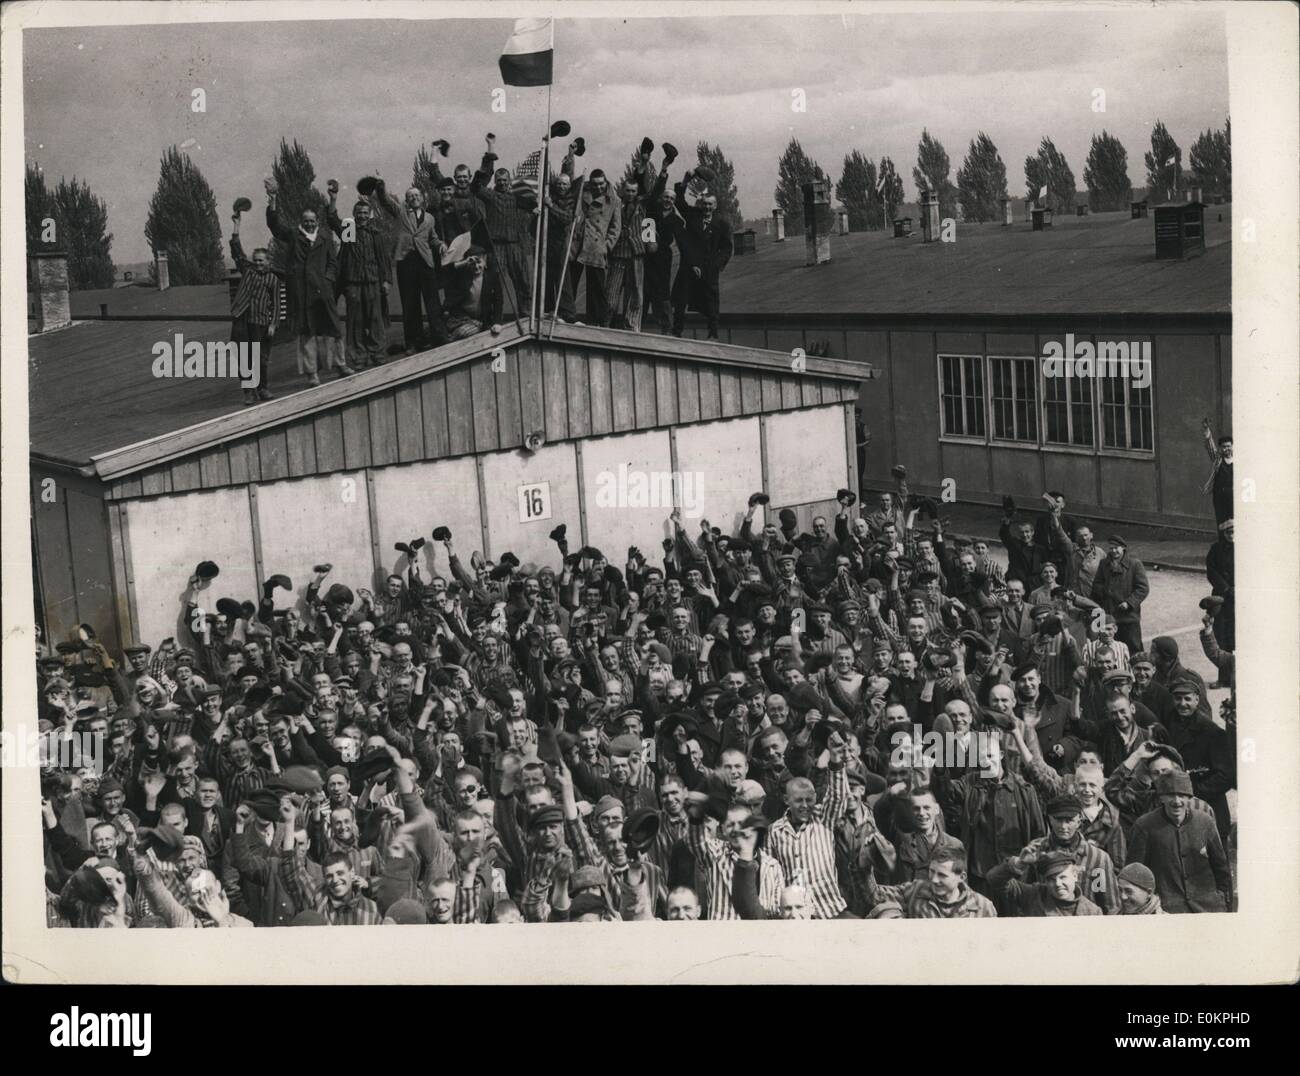 05. Mai 1945 - Gefangene jubeln, als das Vernichtungslager Dachau befreit wird : Dachau, das berüchtigtste Konzentrationslager von allen, wurde von Männern der 42. Regenbogendivision der 7. Armee der USA befreit. Szenen von entsetzlichen Schrecken wurden von den amerikanischen Truppen beobachtet, als sie von Gebäude zu Gebäude gingen. Tausende von verhungerten Leichen wurden in der Nähe der Ritt auf Cre angehäuft, und Tausende von Lebenden wurden vor Freude verrückt, als die verhungerten Jungen in ihr Gefängnis stürzten. Viele der Gefangenen nahmen sofort die S.S. fest Stockfoto